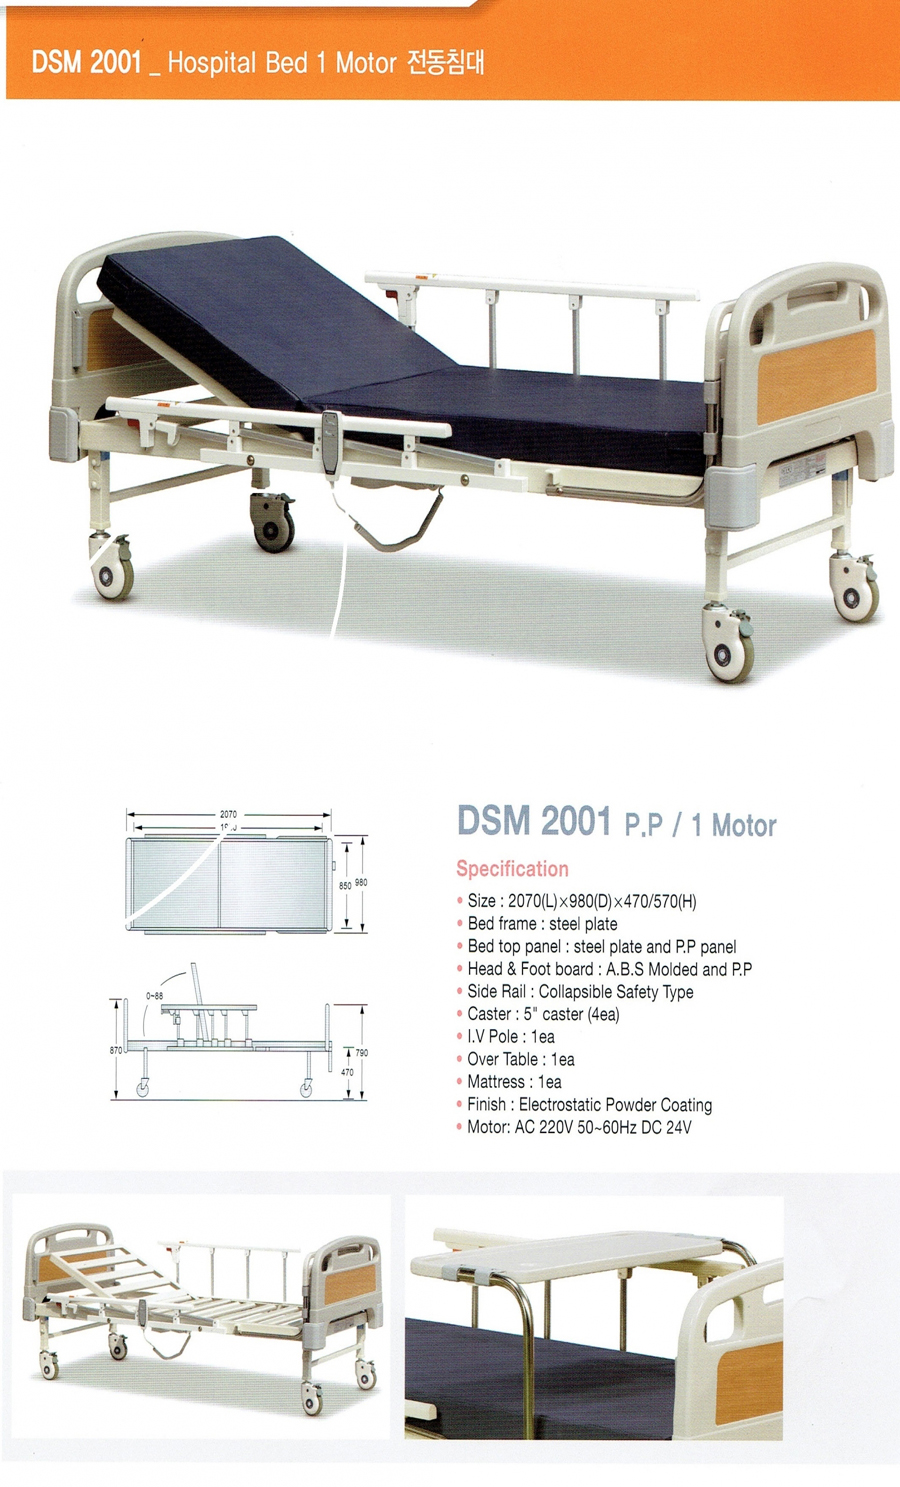 DSM--2001 (1 Motor P.P).jpg